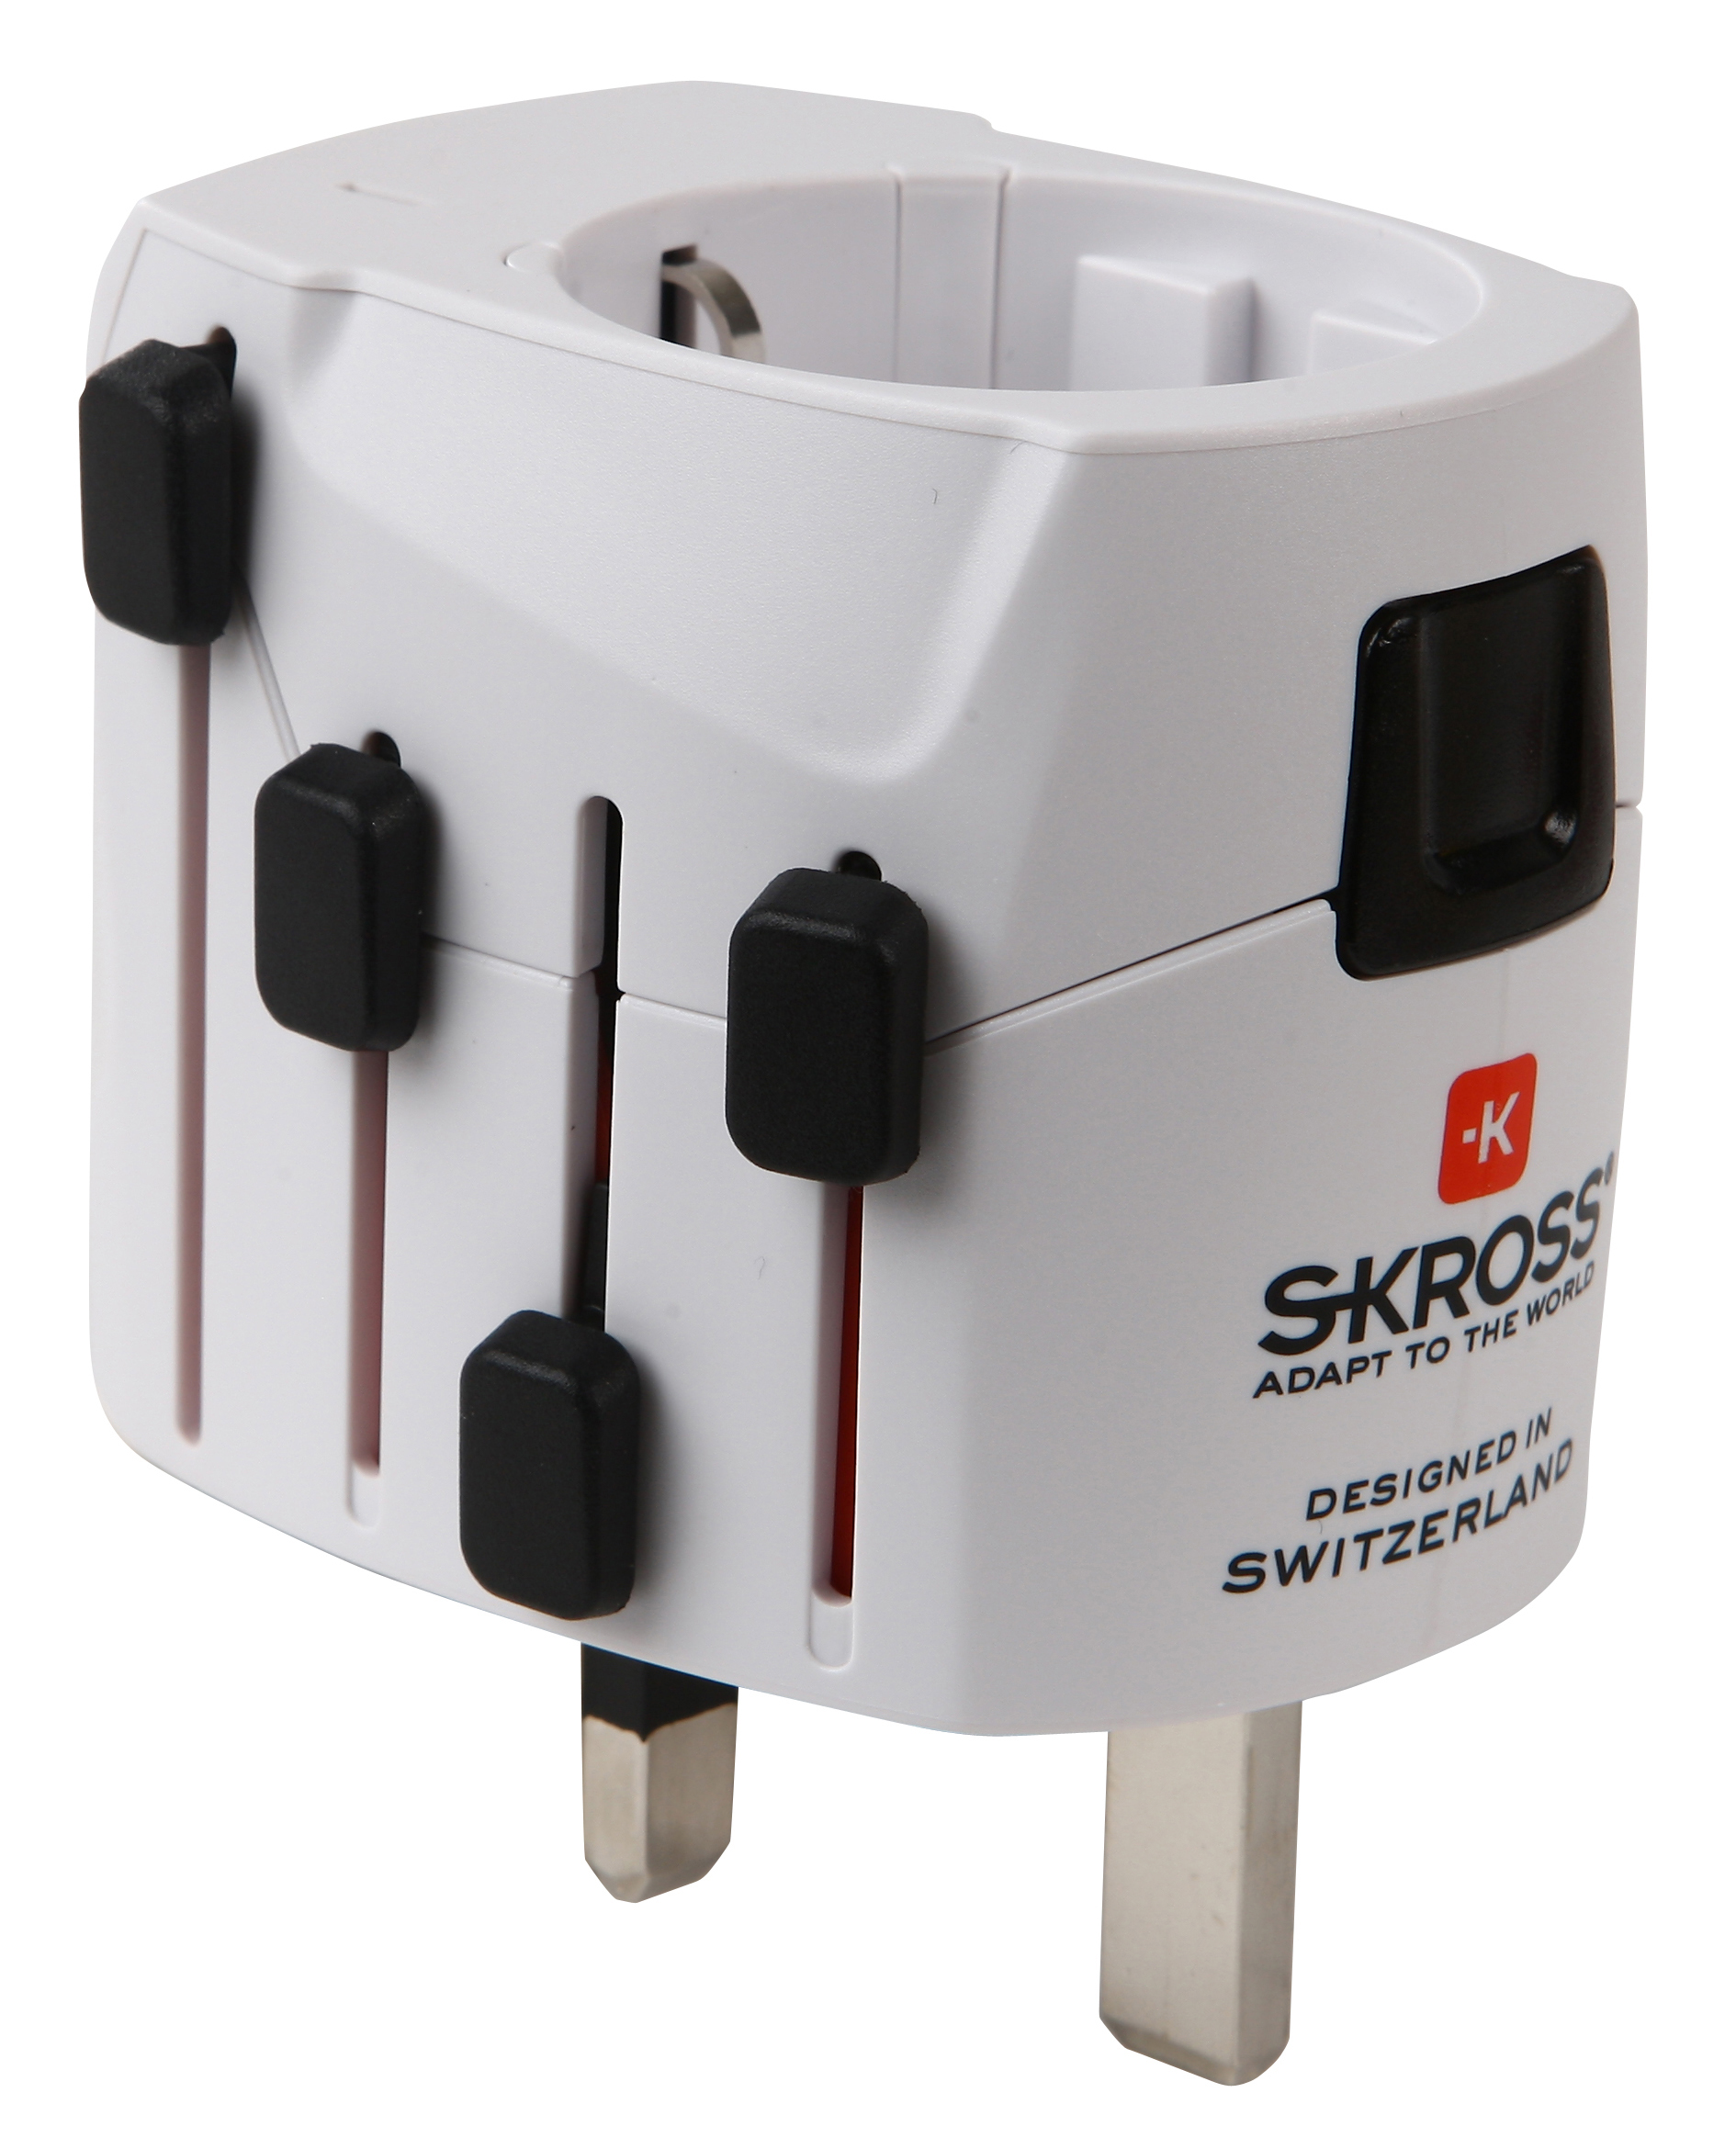 PRO SKROSS Light World Reiseadapter NA886 -